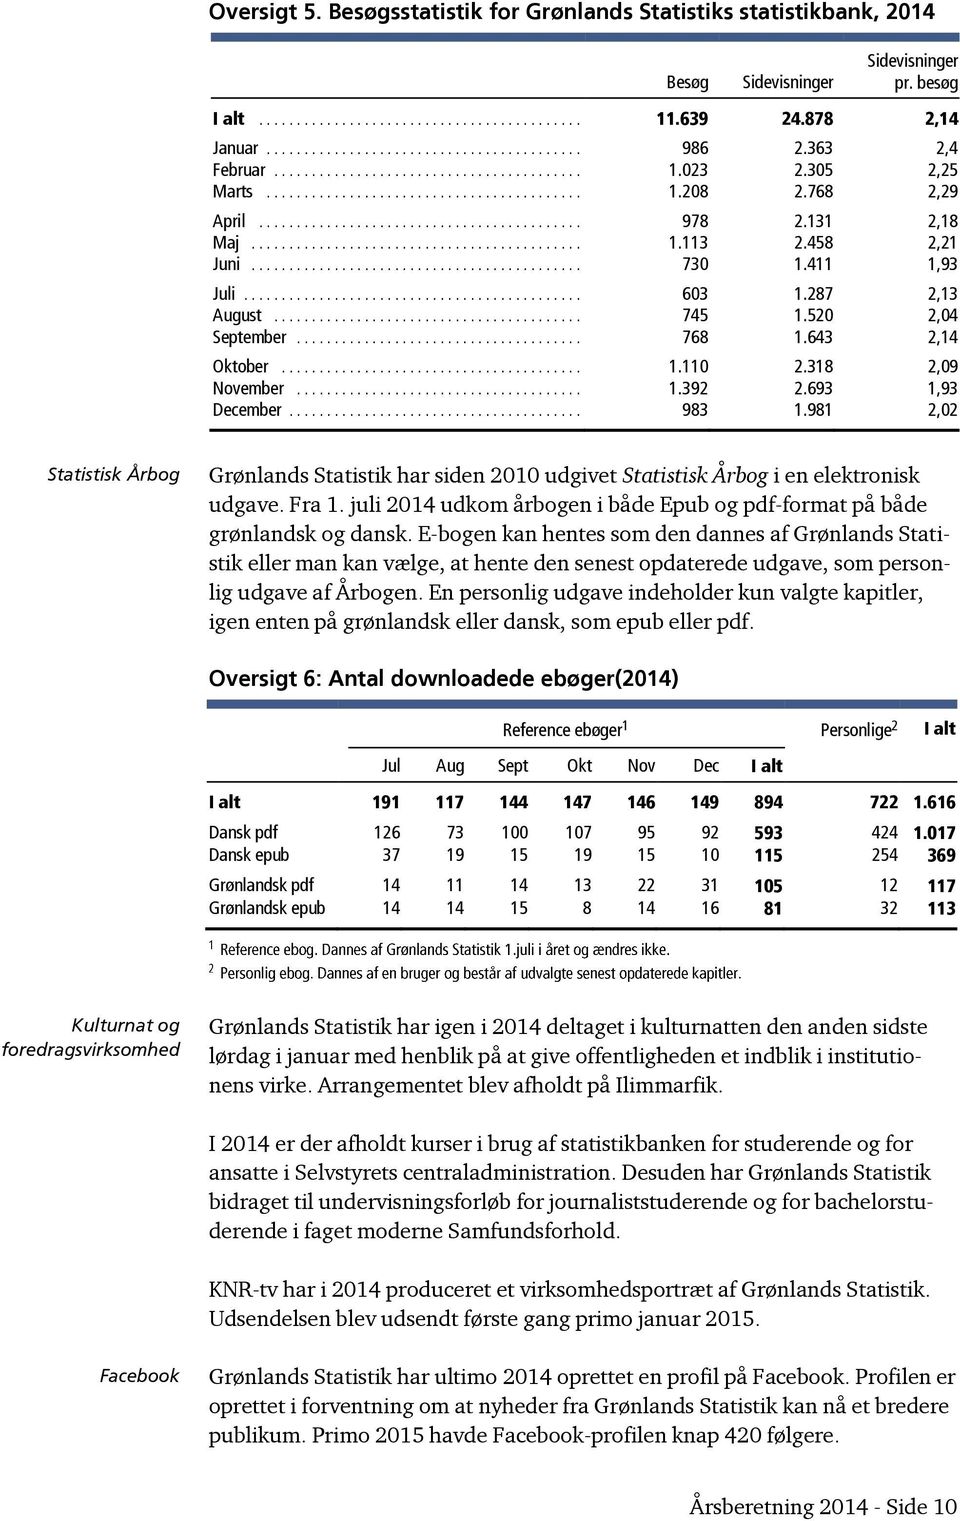 318 2,09 November... 1.392 2.693 1,93 December... 983 1.981 2,02 Statistisk Årbog Grønlands Statistik har siden 2010 udgivet Statistisk Årbog i en elektronisk udgave. Fra 1.